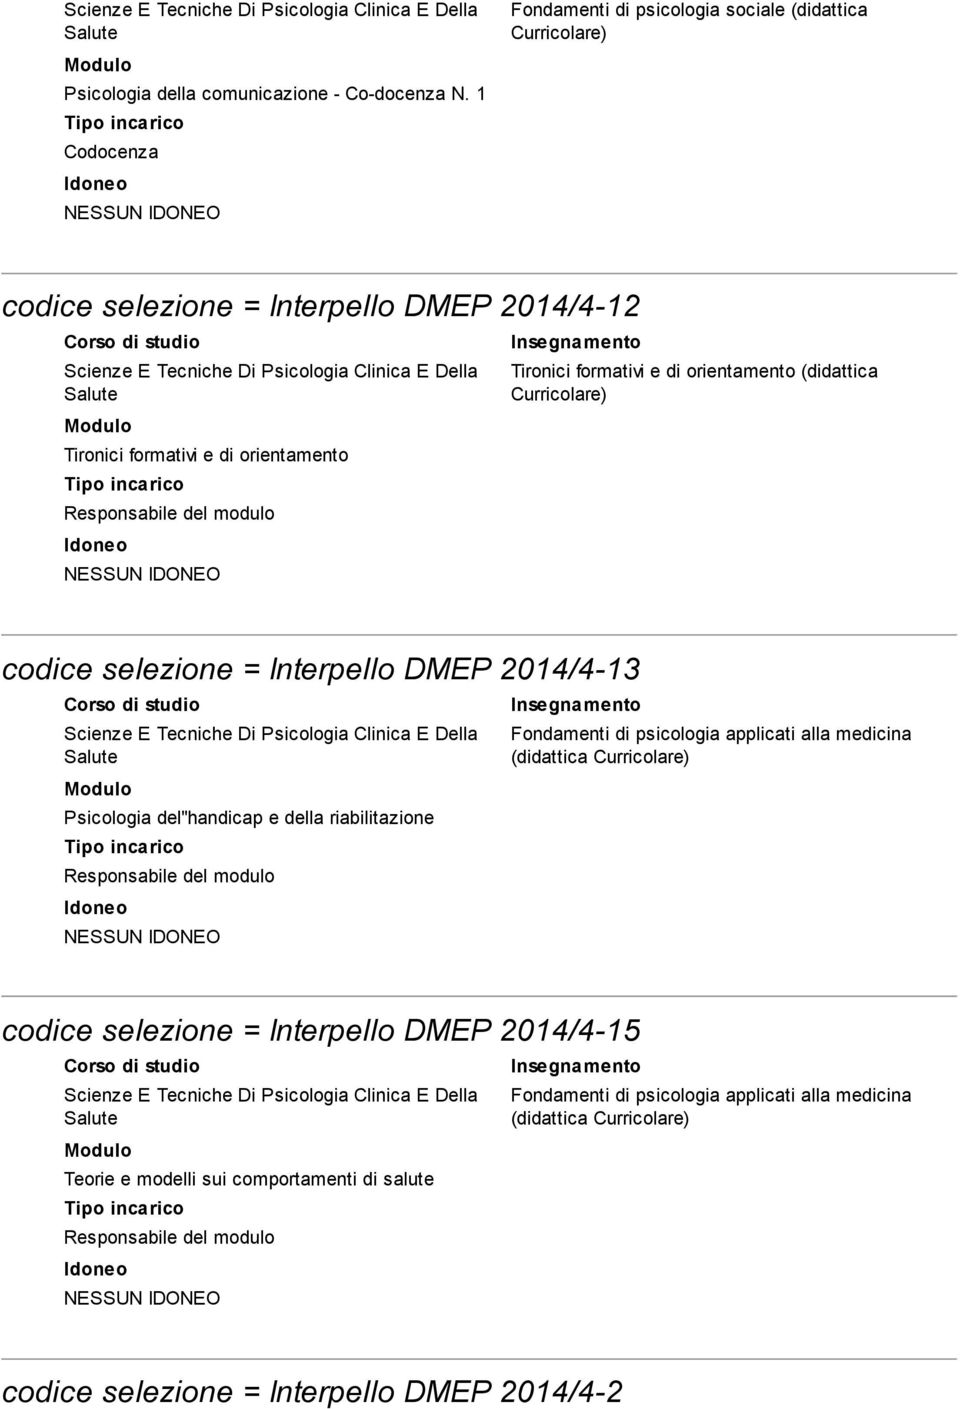 orientamento codice selezione = Interpello DMEP 2014/4-13 Psicologia del''handicap e della riabilitazione Fondamenti di